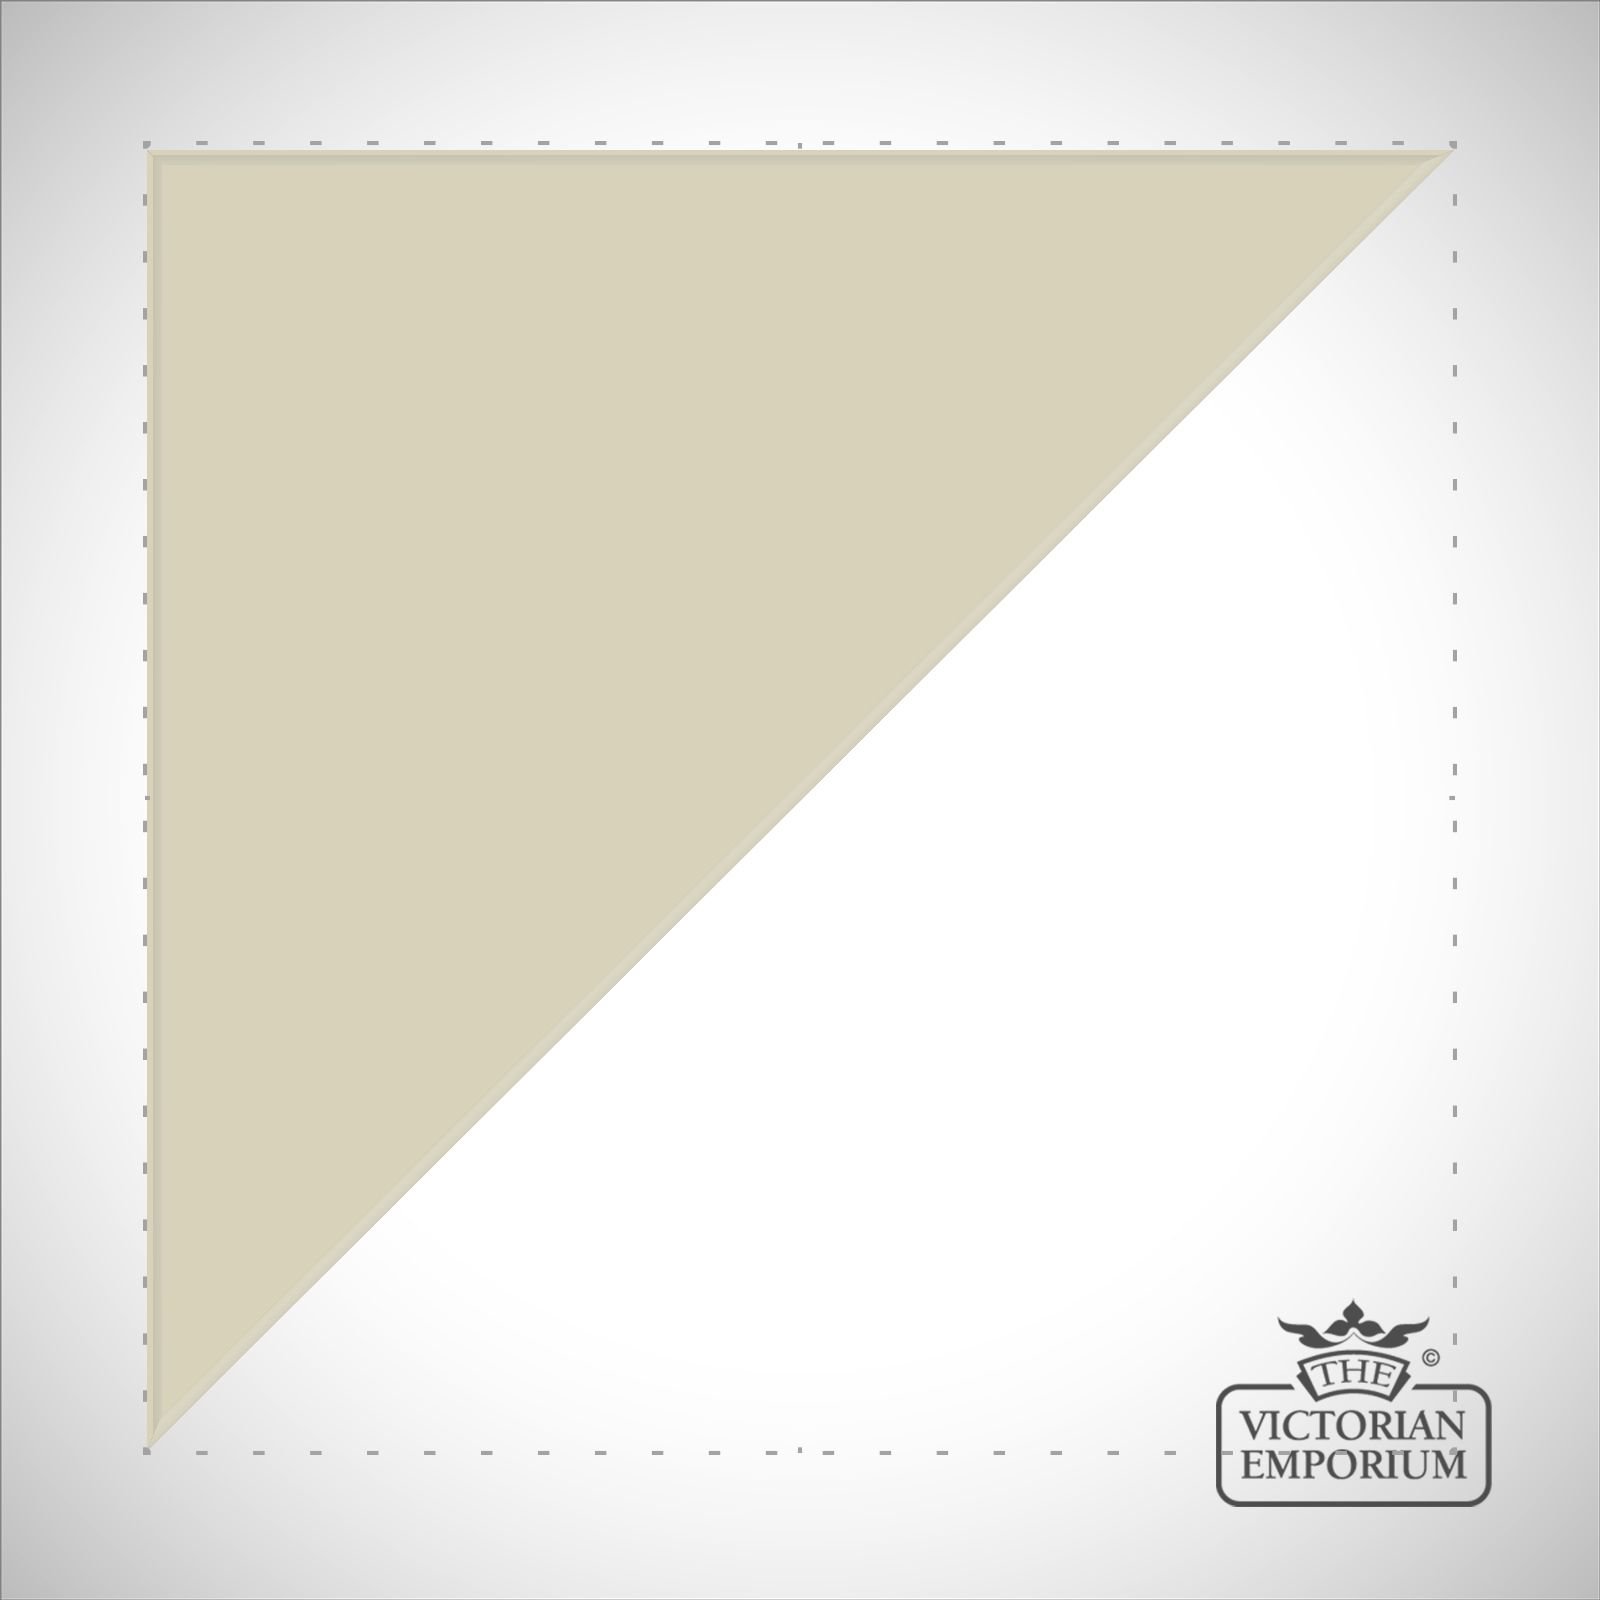 White Triangle/Half square tiles